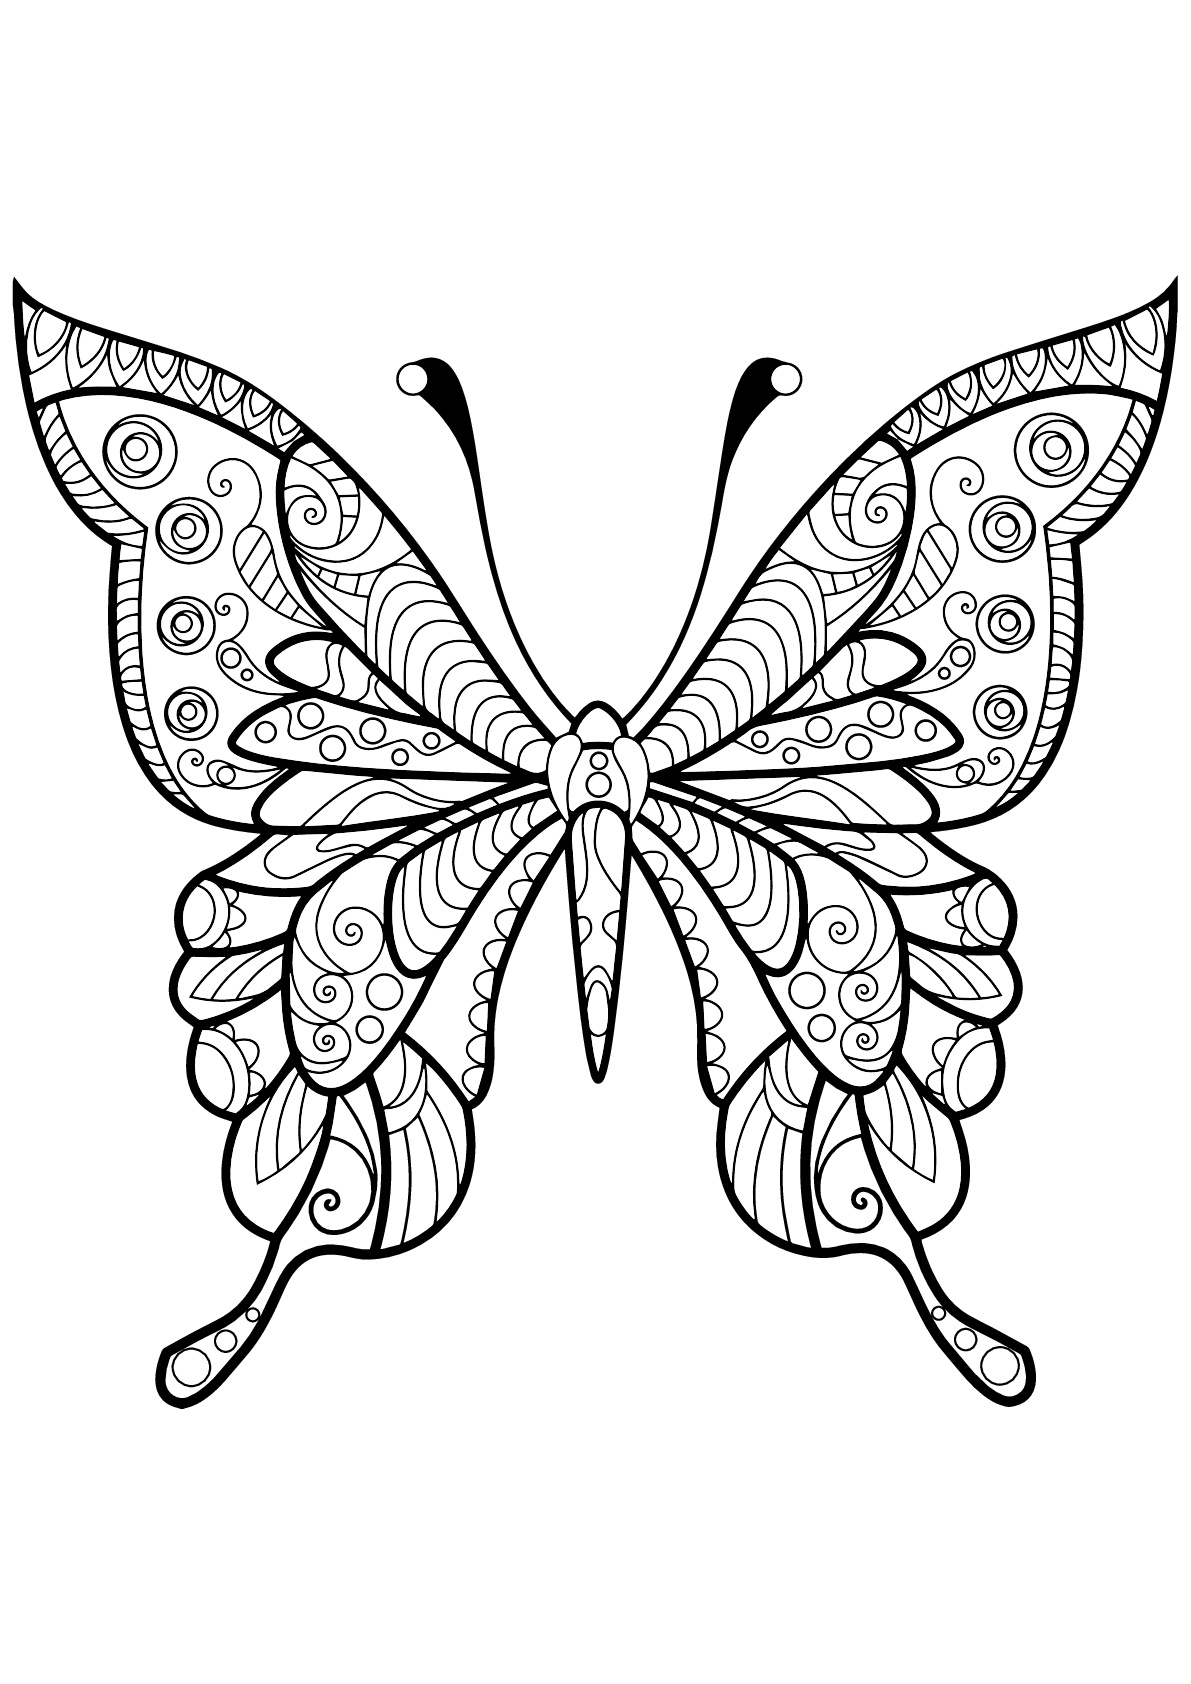 Mariposa con bellos e intrincados dibujos - 4